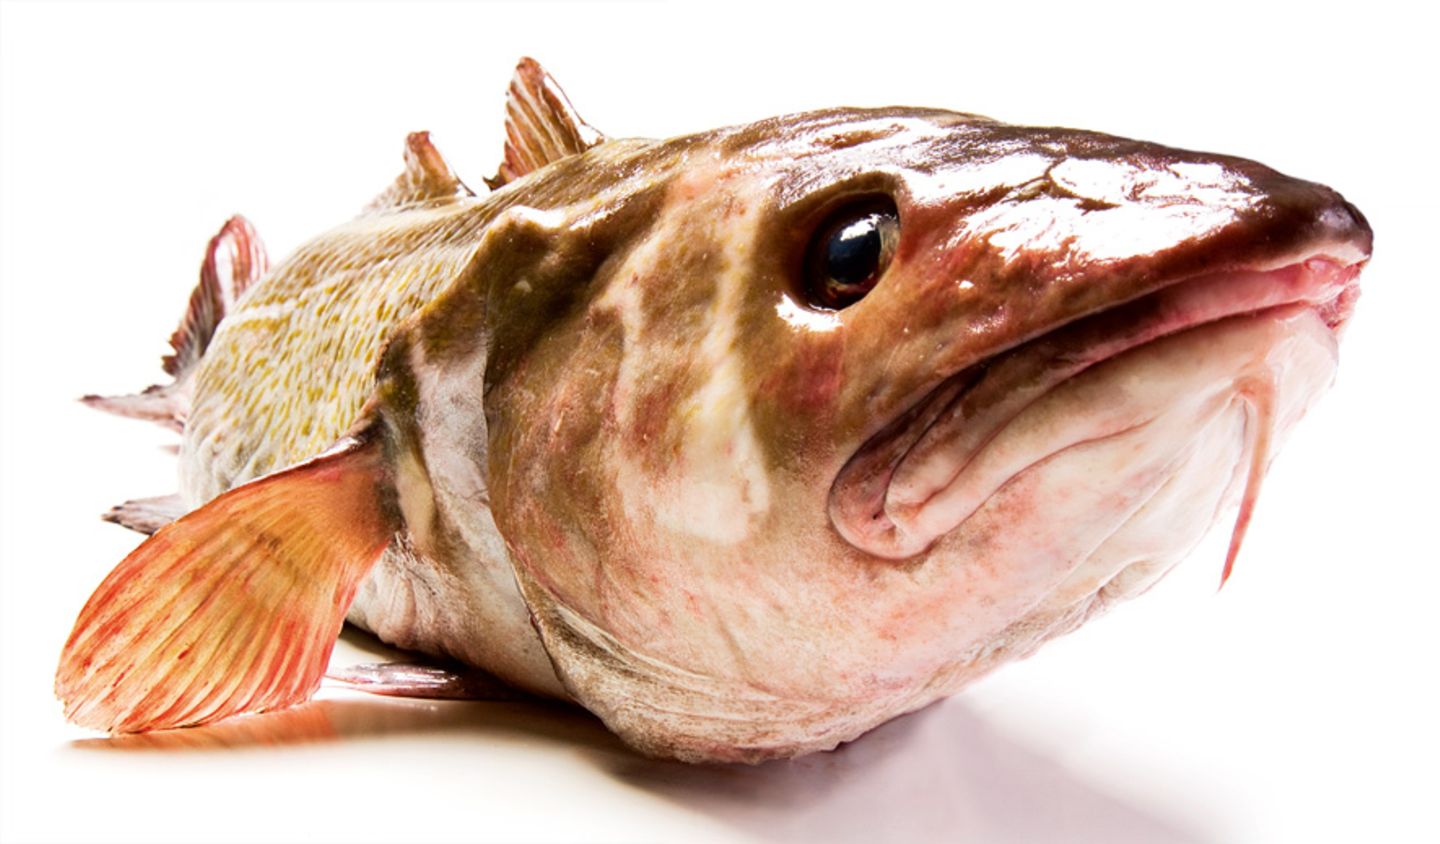 Gesunde Ernährung: Worauf sollte ich beim Fischkauf achten?